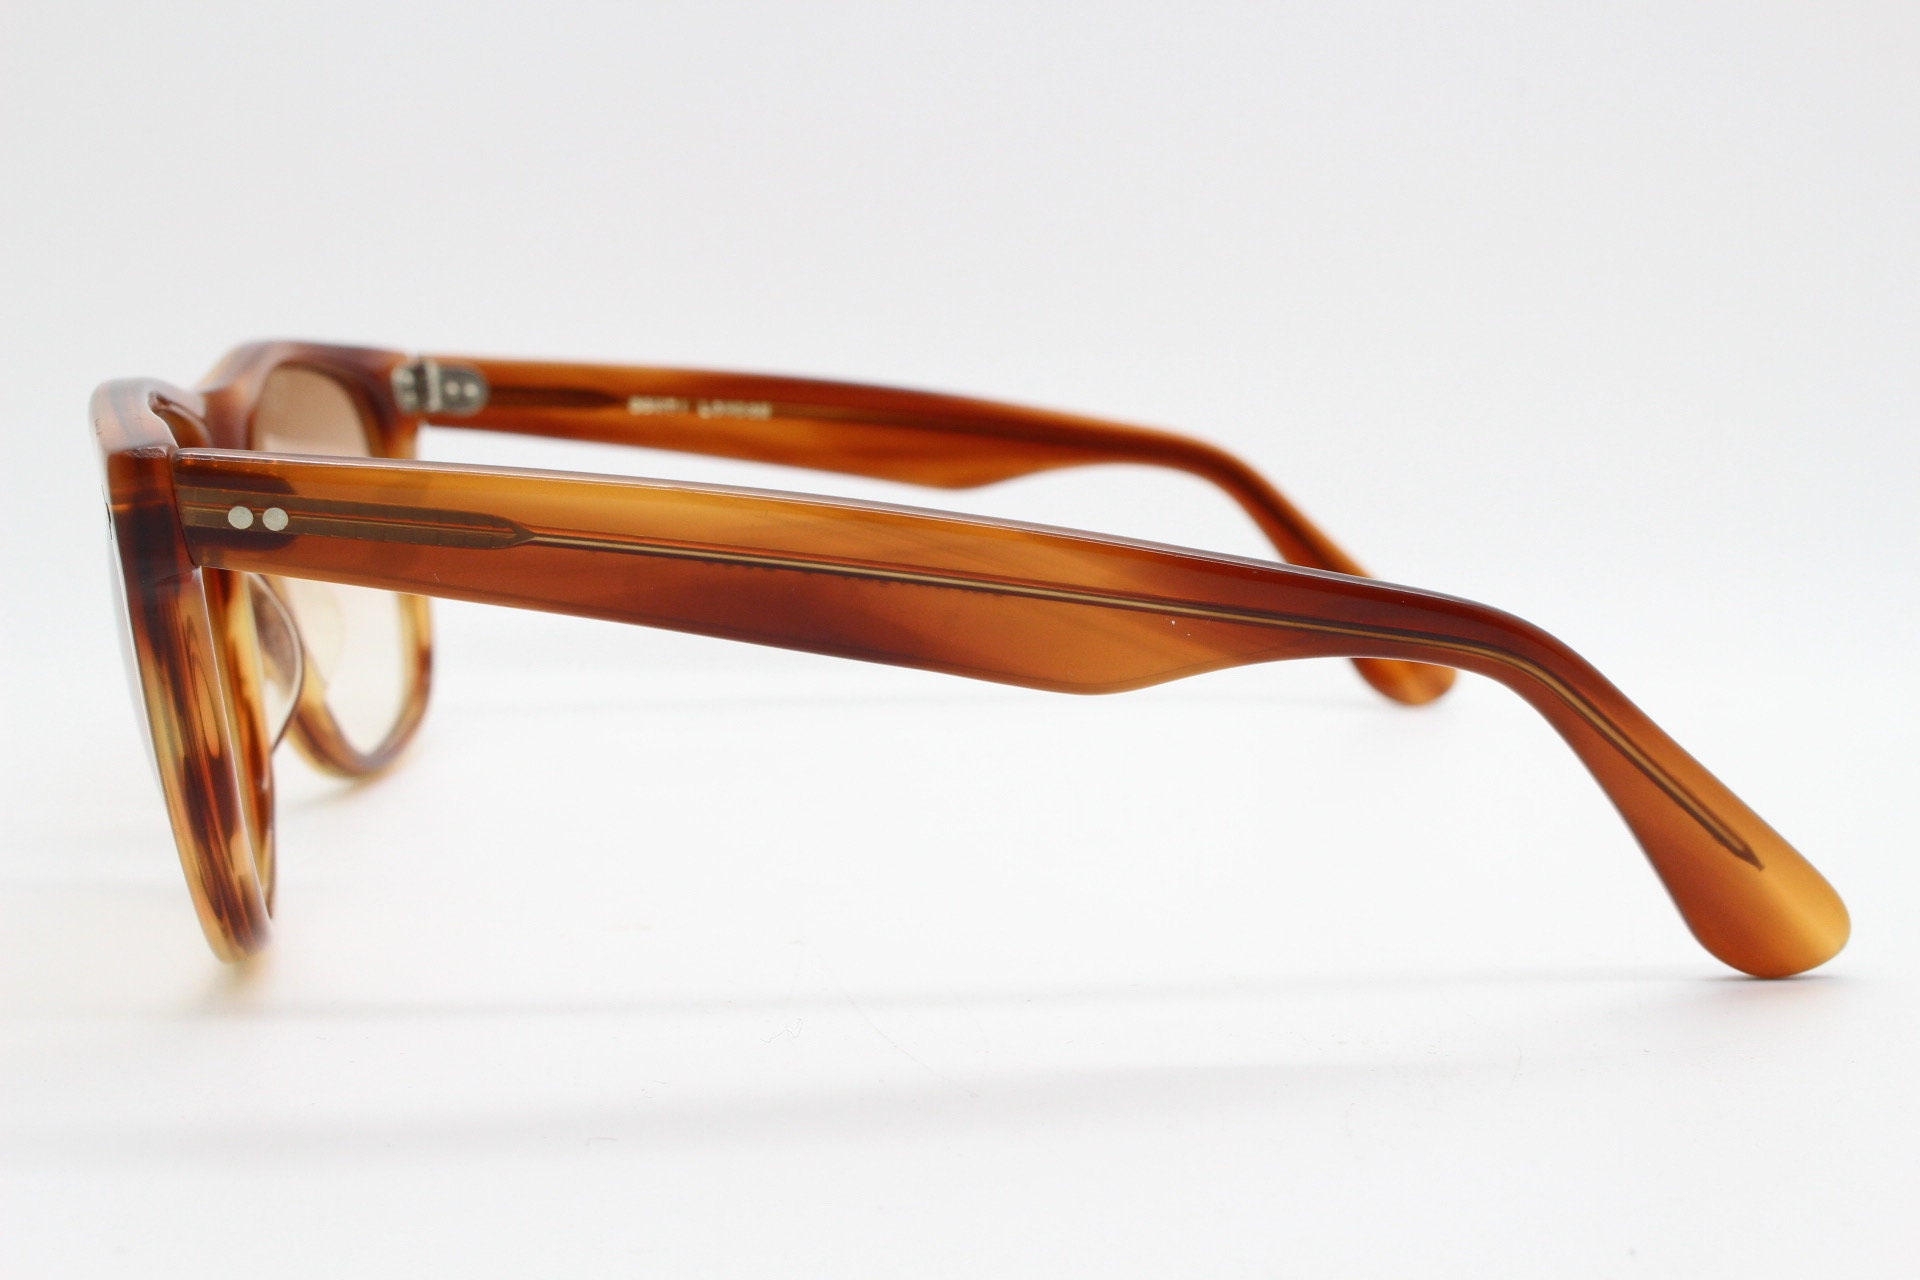 Accessoires Zonnebrillen & Eyewear Zonnebrillen designer item voor mannen goede voorbestemde staat met vervangende lenzen METZLER Vintage jaren 1970 Wayfarer stijl Made in Germany zonnebril 